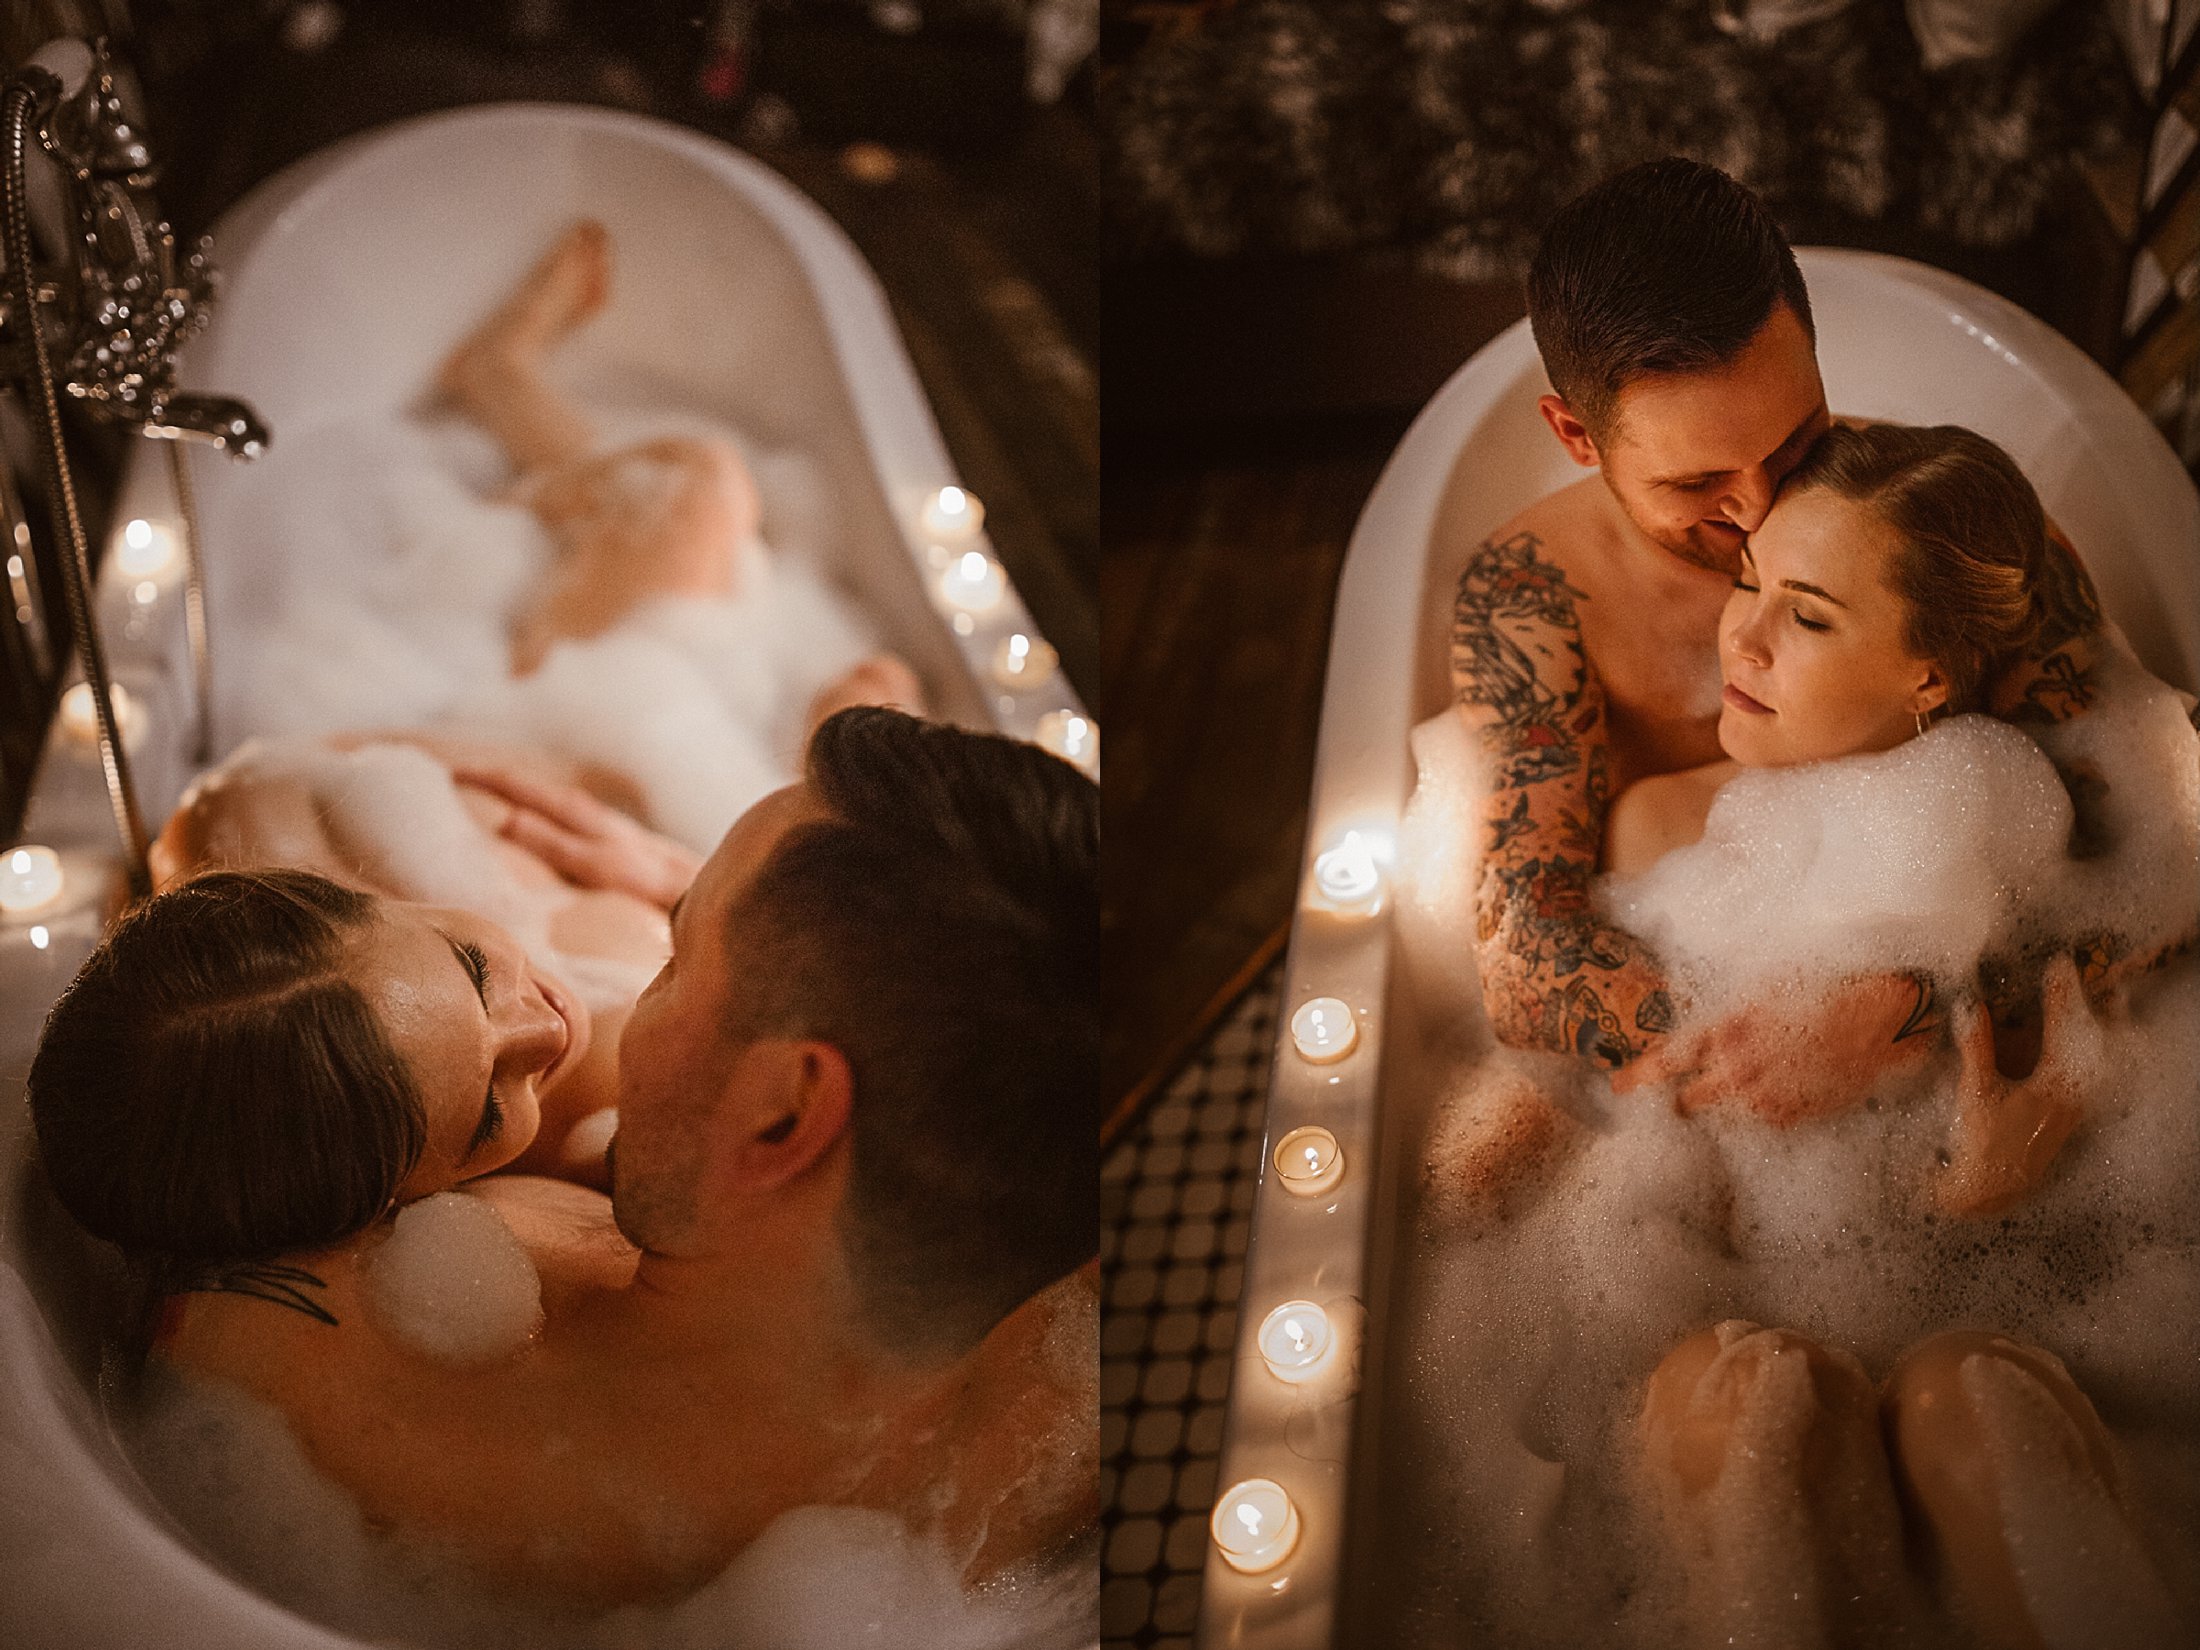 couples-session-bubble-bath--5-2.jpg